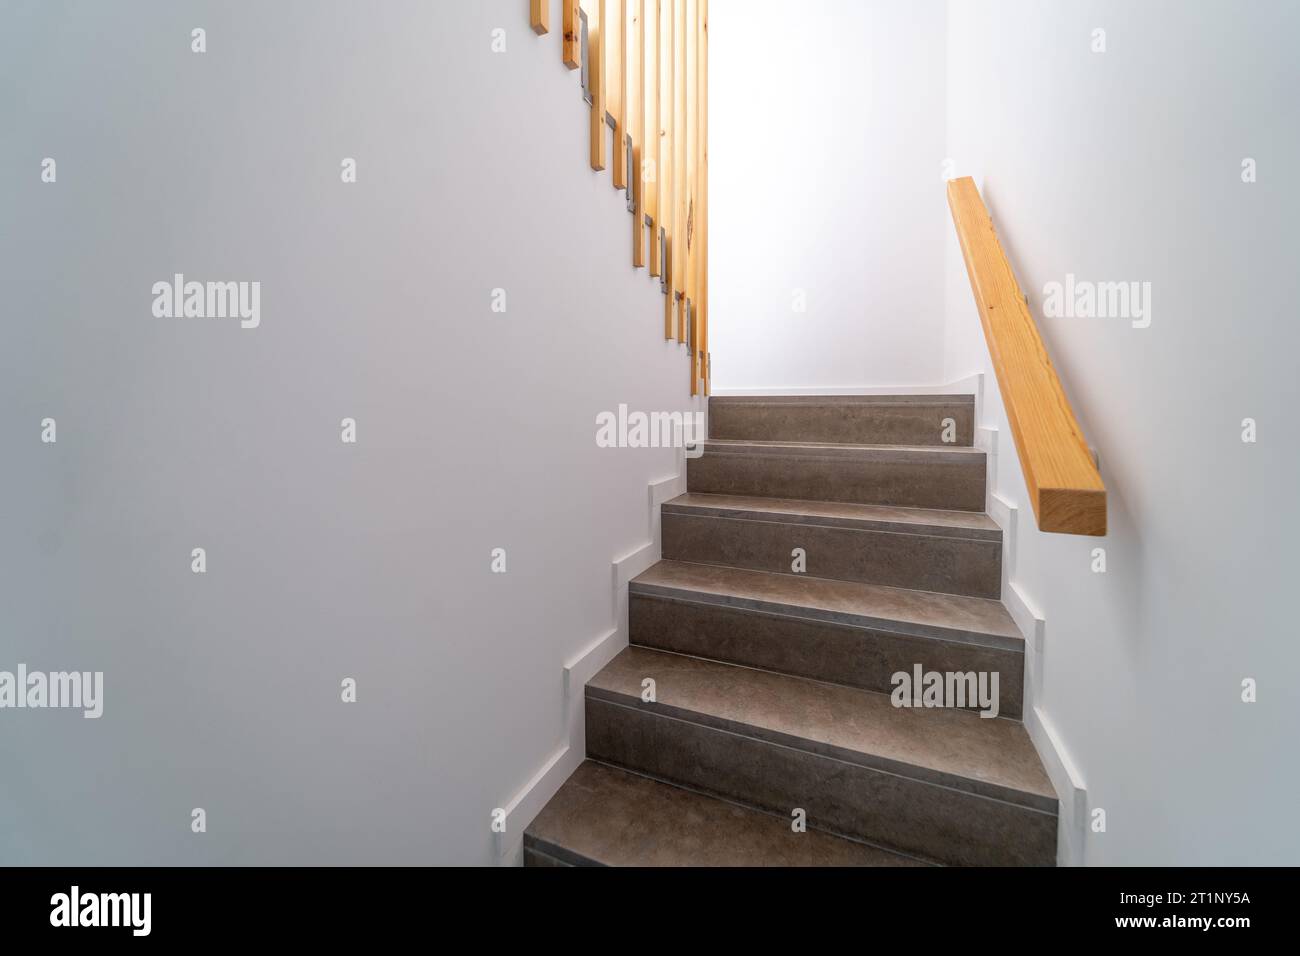 Moden Innentreppe aus Stein. Treppenaufgang geht runter. Pfad einer Treppe oder Treppe innerhalb eines Hauses. Innenraumdesign-Konzept. Stockfoto